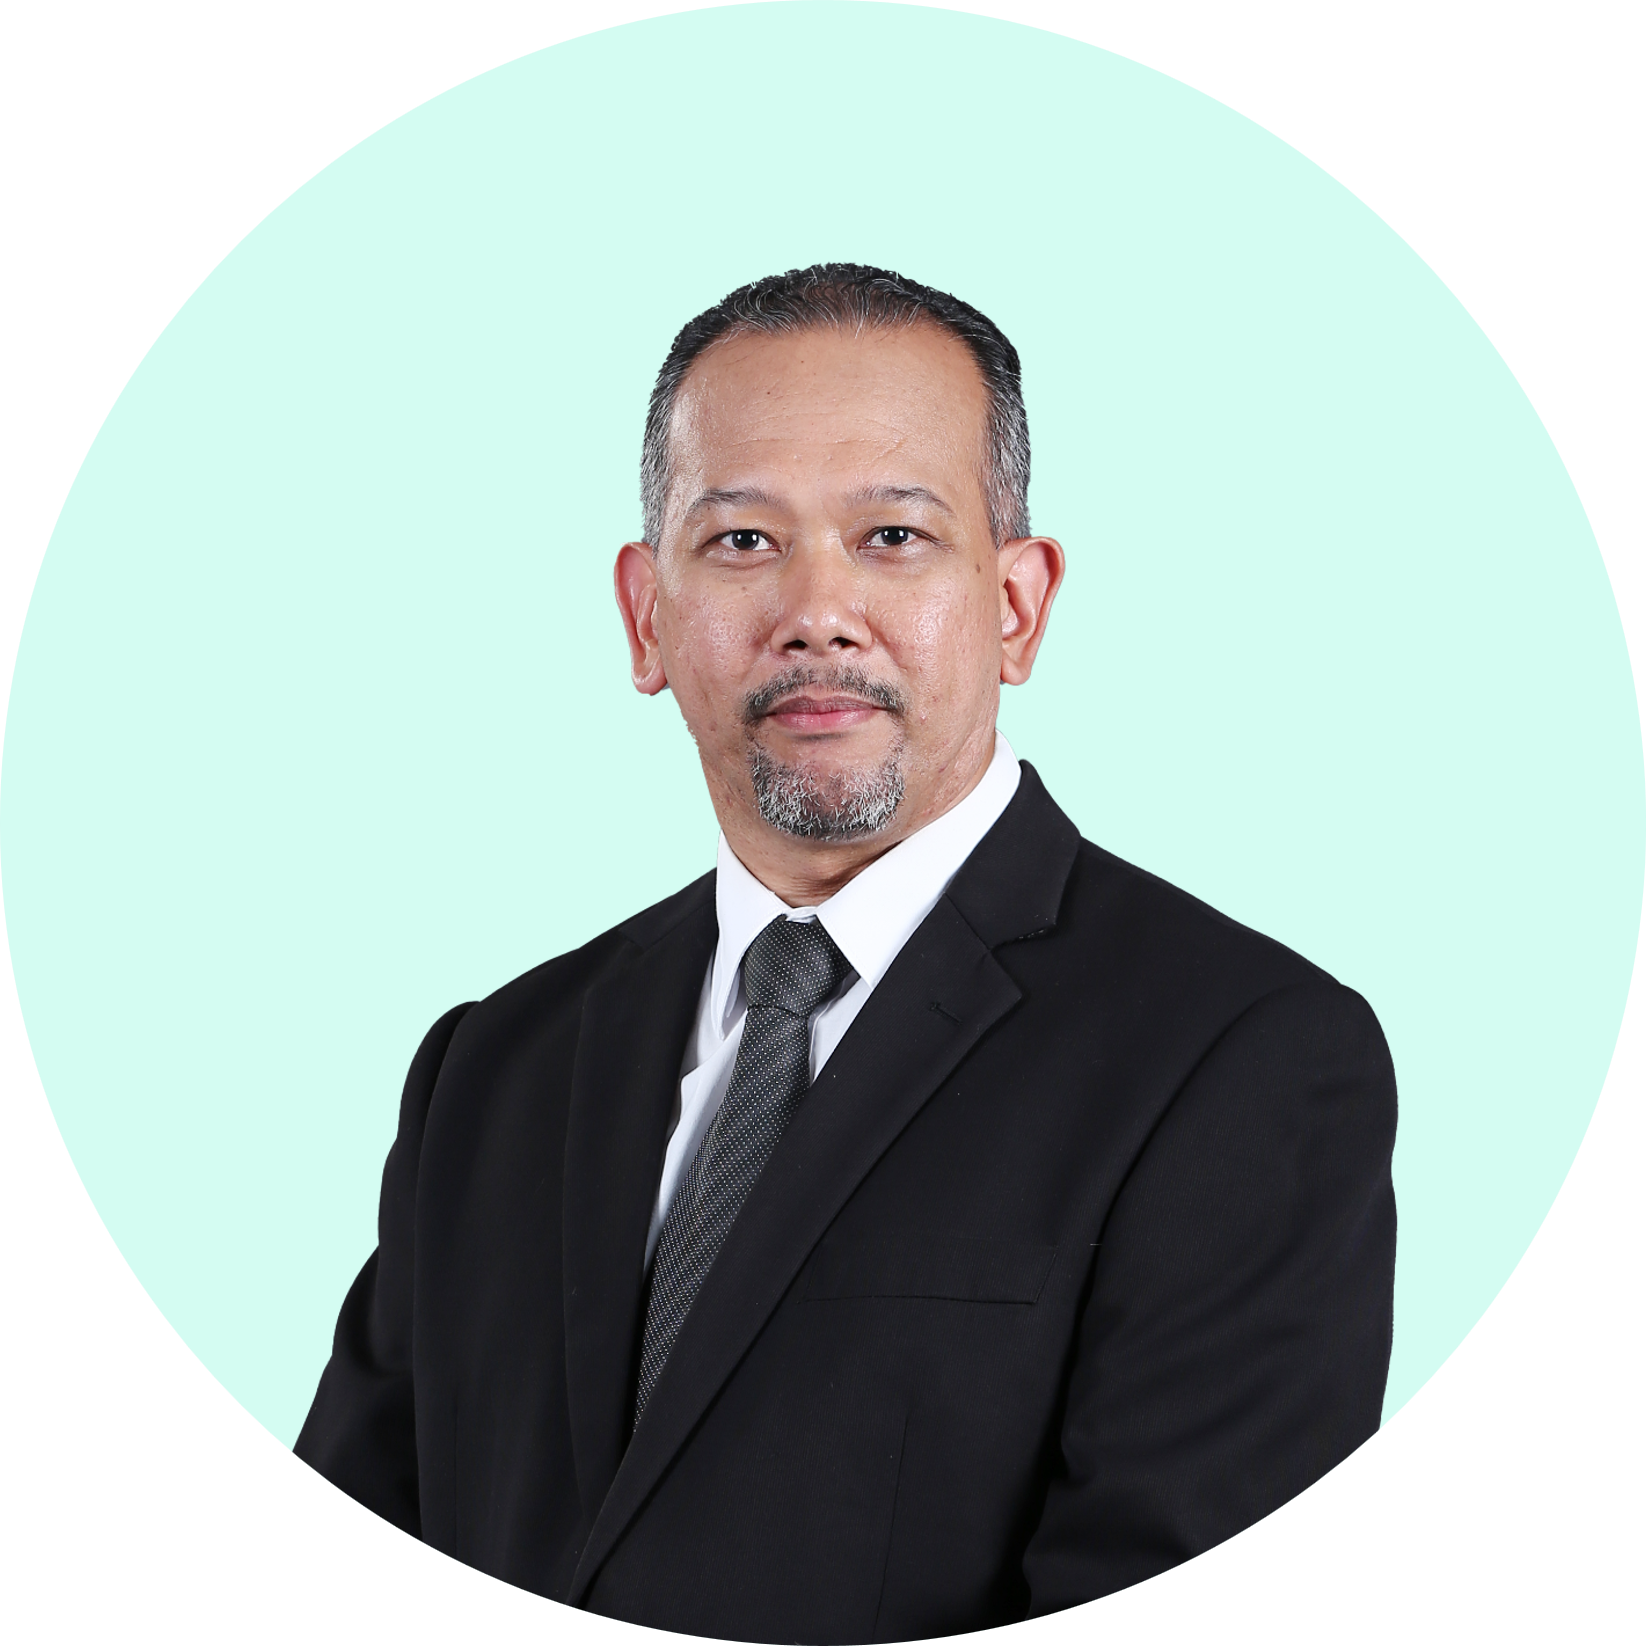 Assoc. Prof. Ts. ChM. Dr. Nik Ahmad Nizam bin Nik Malek